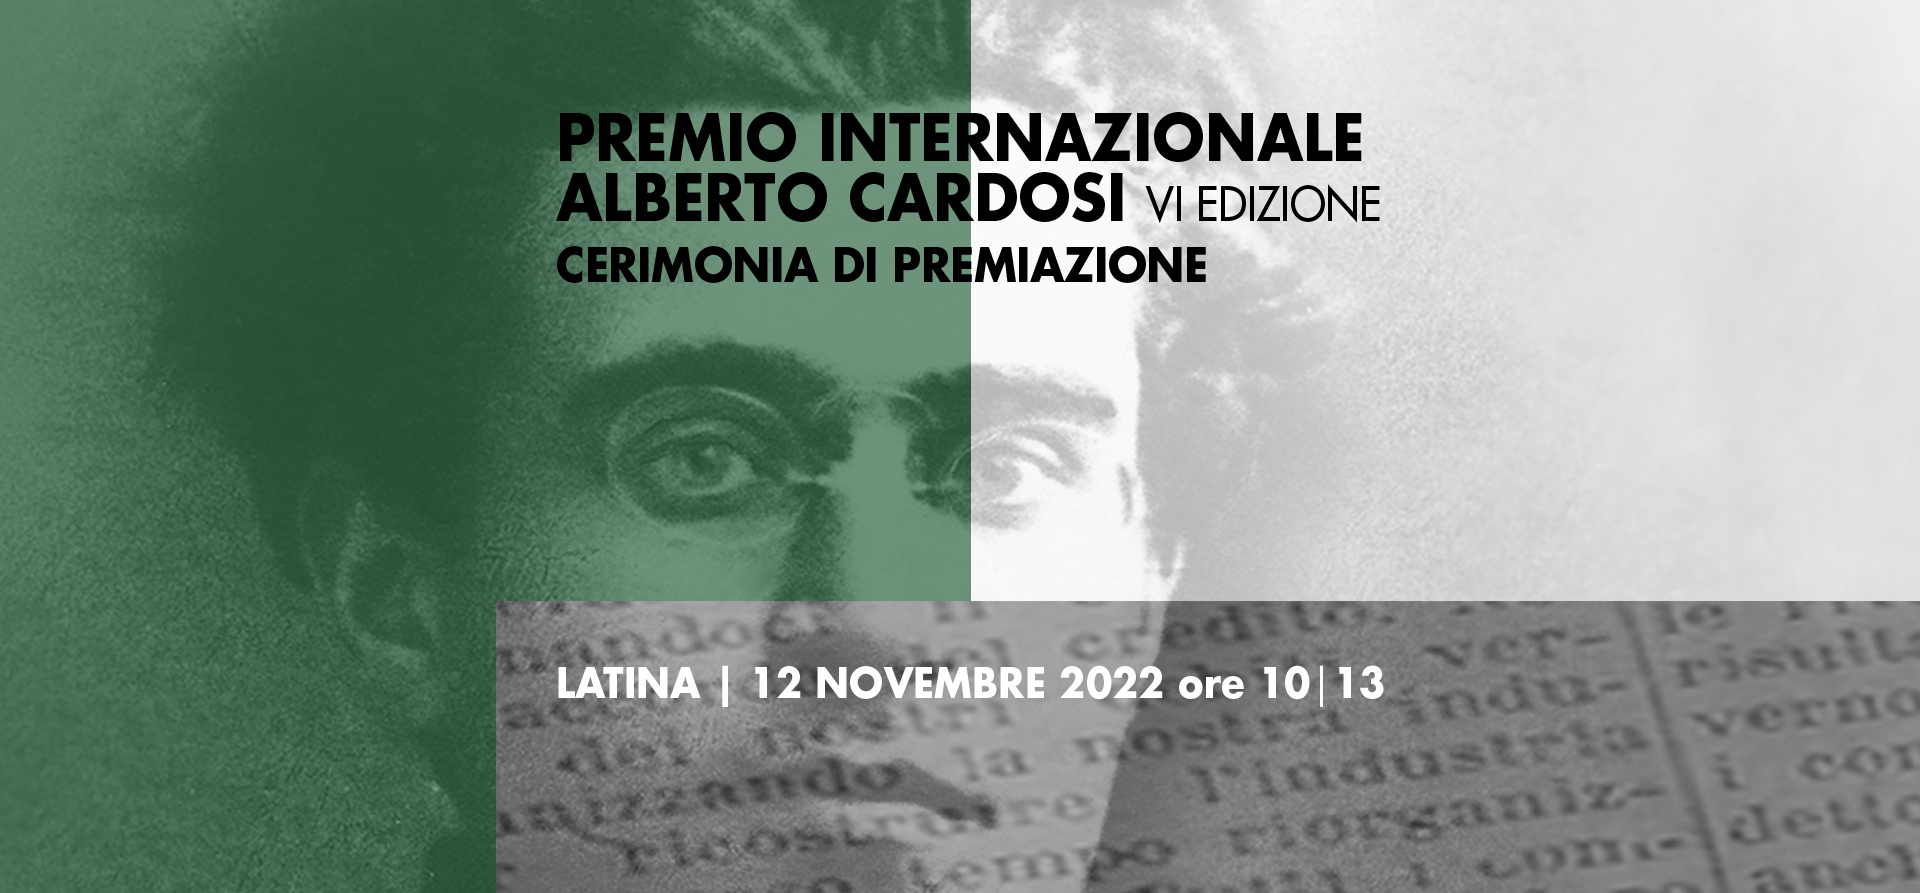 PREMIO INTERNAZIONALE ALBERTO CARDOSI